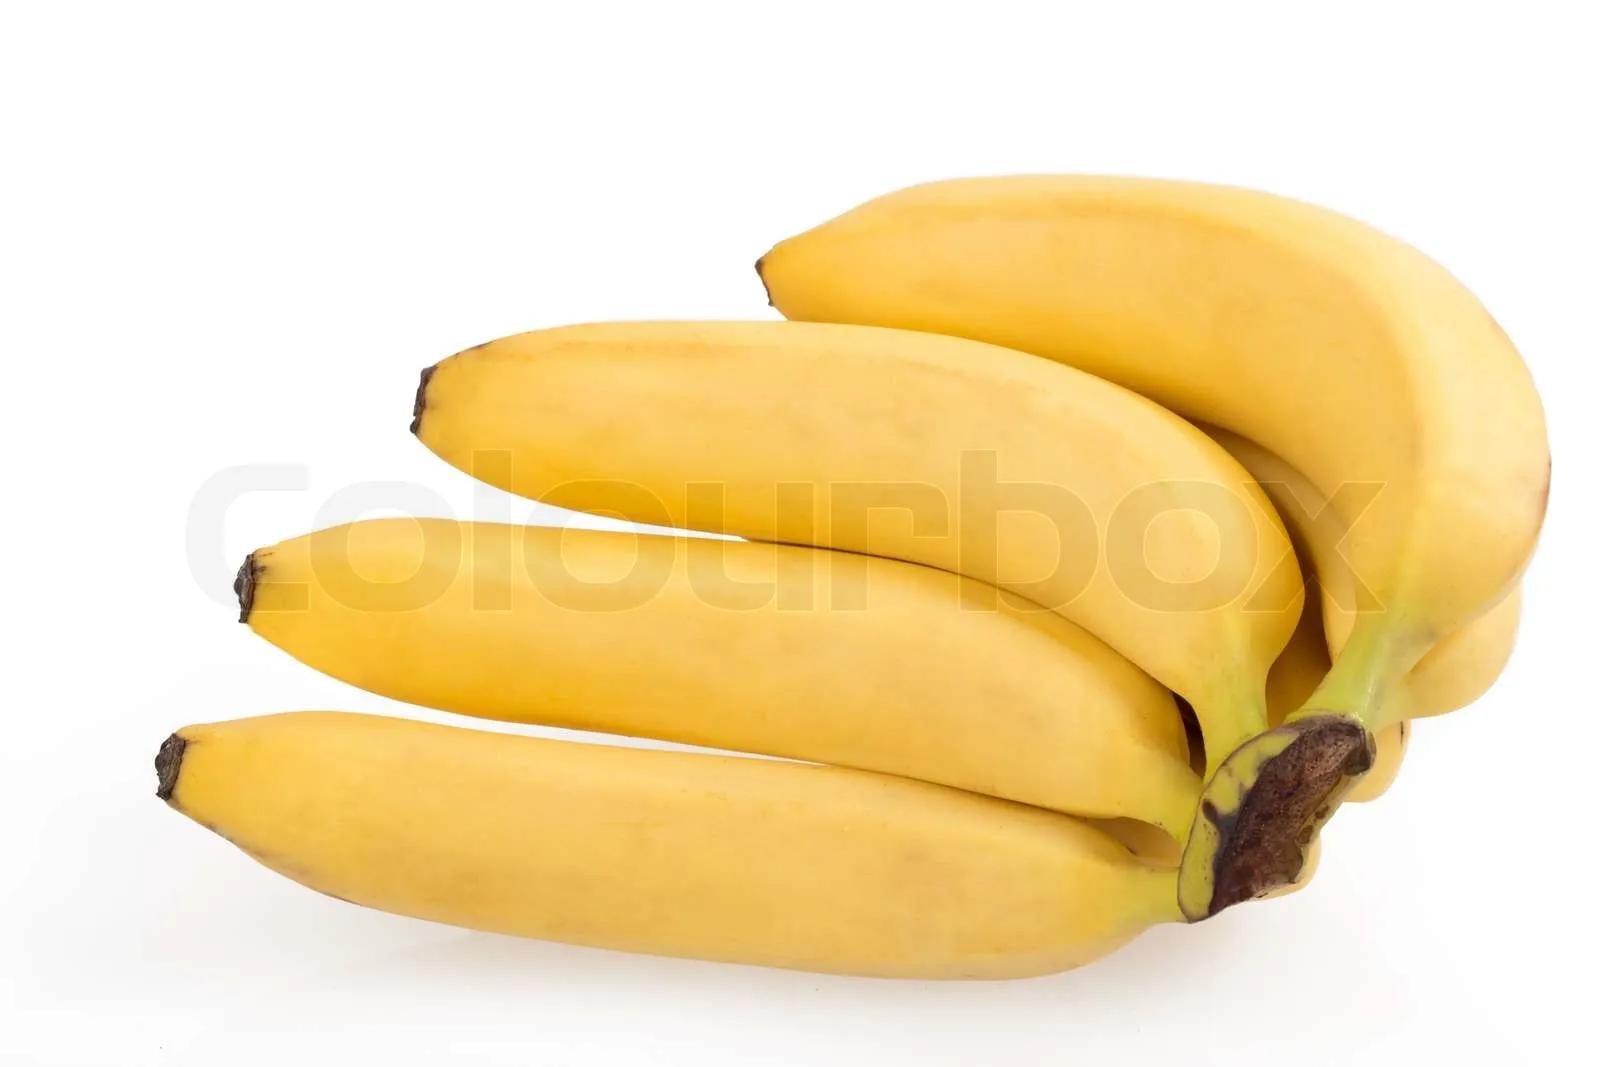 Banane | Stock Bild | Colourbox